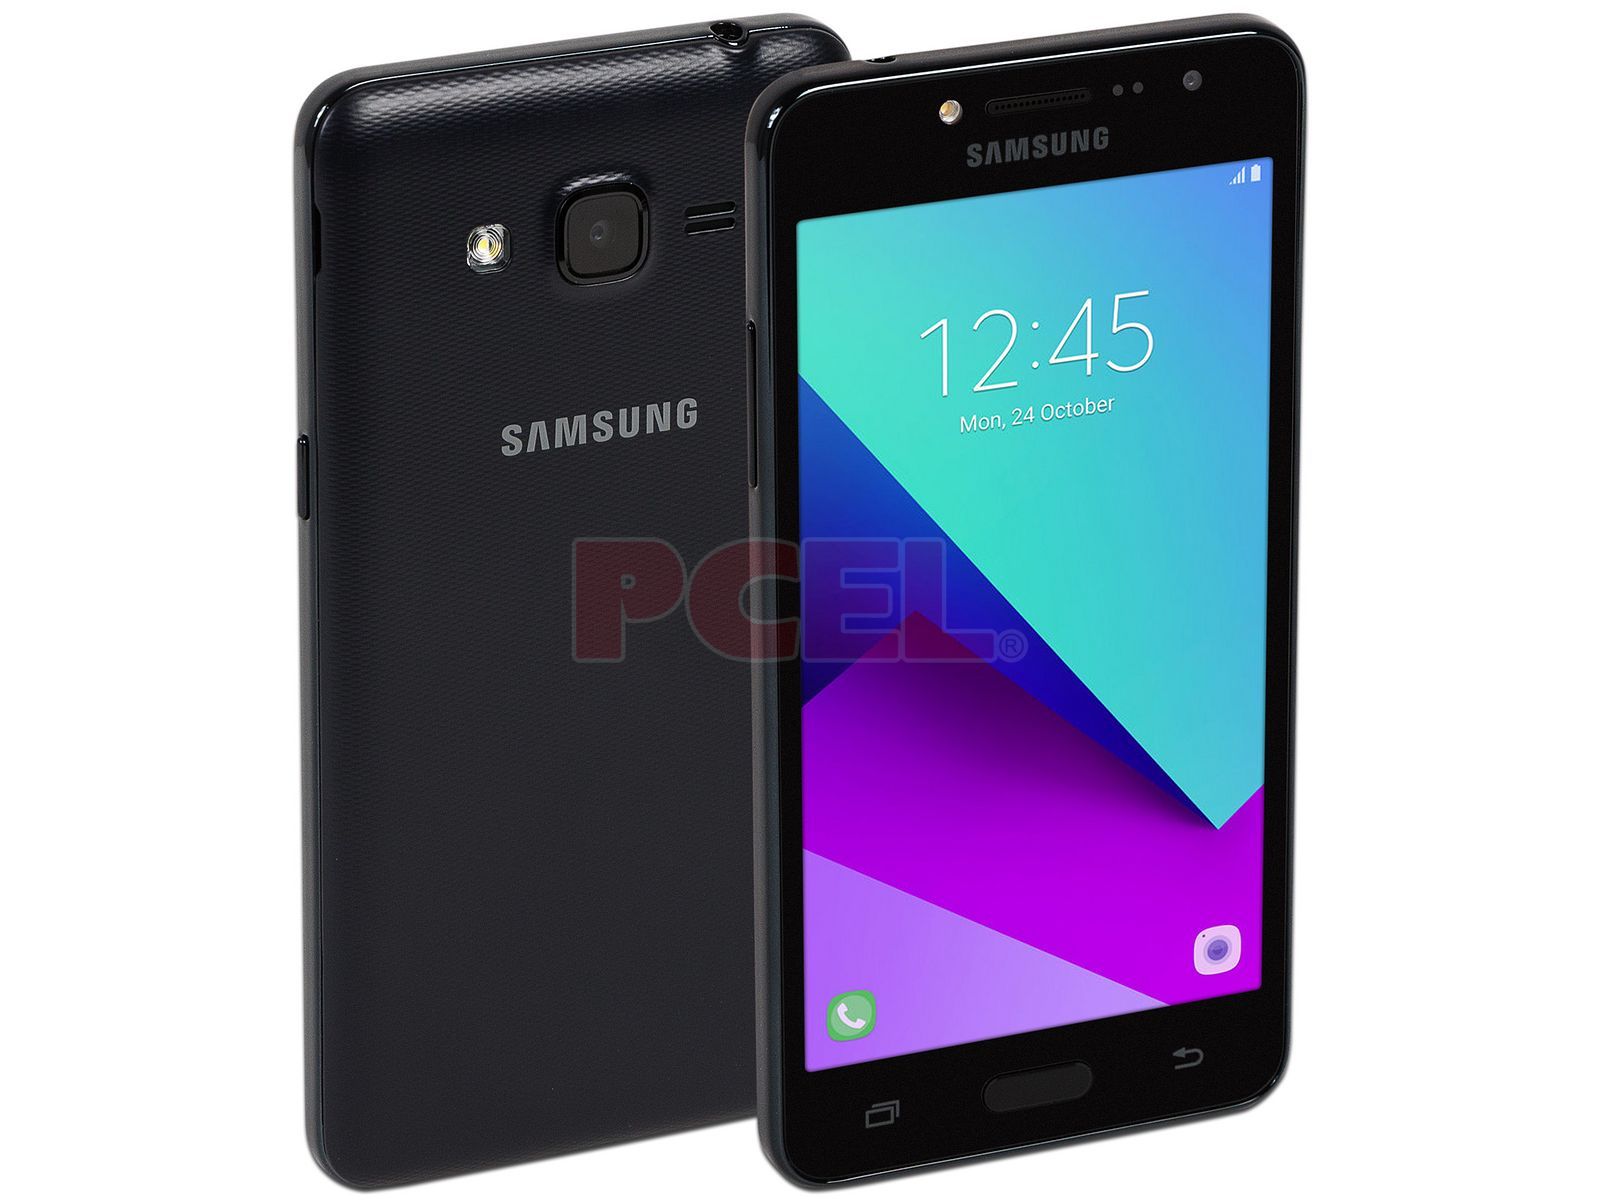 Smartphone Samsung J2 Prime: Procesador Quad-Core ( GHz), Memoria RAM de  , Almacenamiento de 16GB (expandible con microSD), Pantalla de 